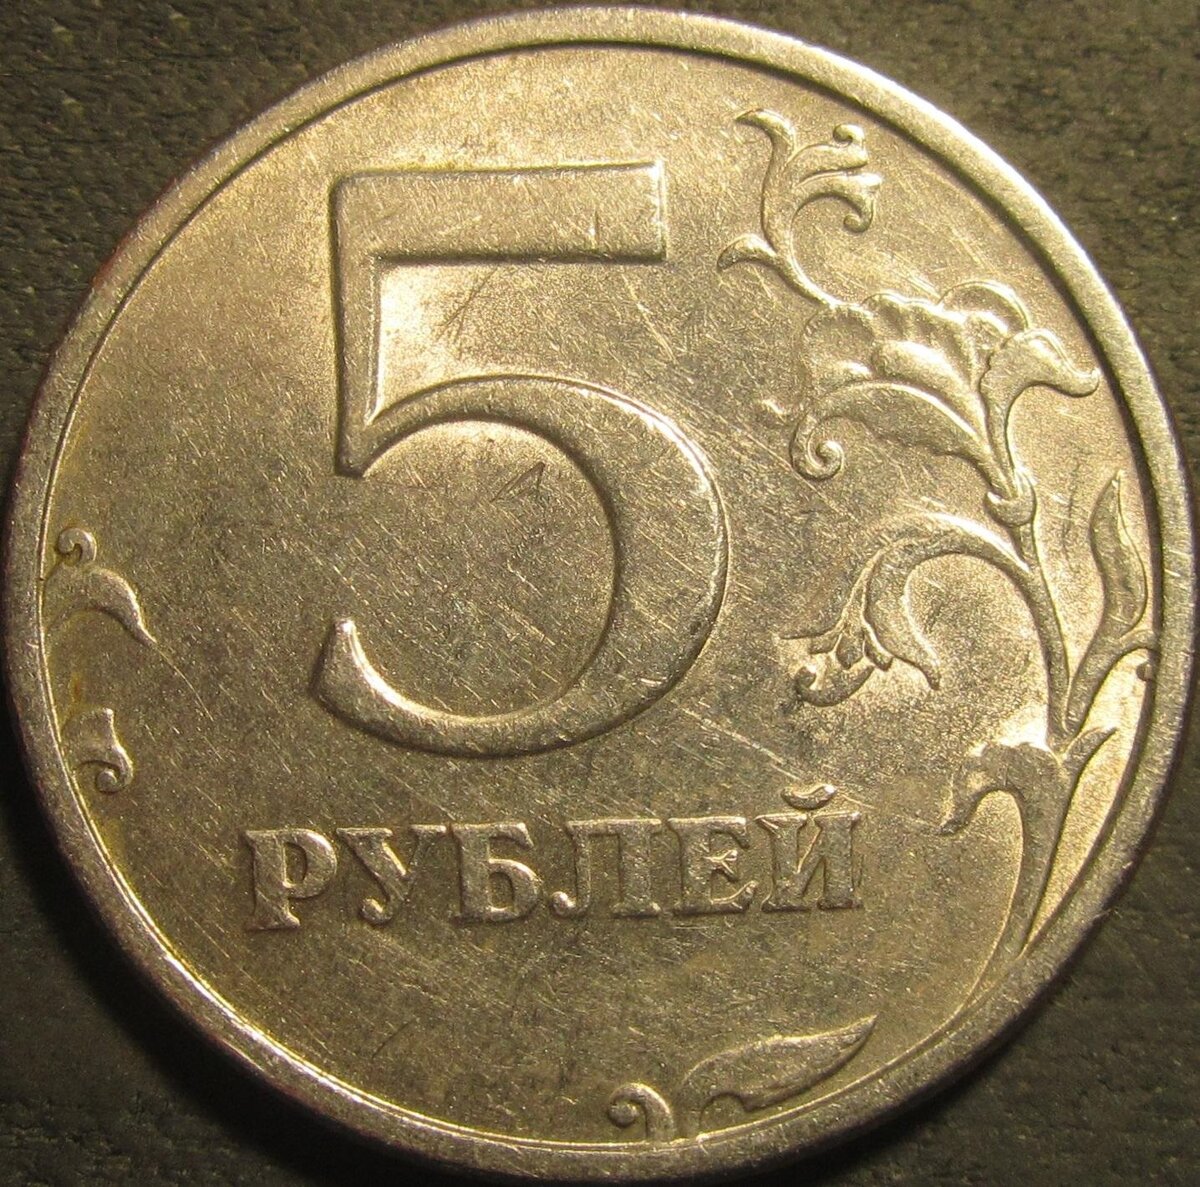 5 рублей в обороте. 5 Рублей 1998 ММД. 50 Рублей 1998. 5 Рублей найденная. 2 Рубль редкие 2014 года м знак приспущен.